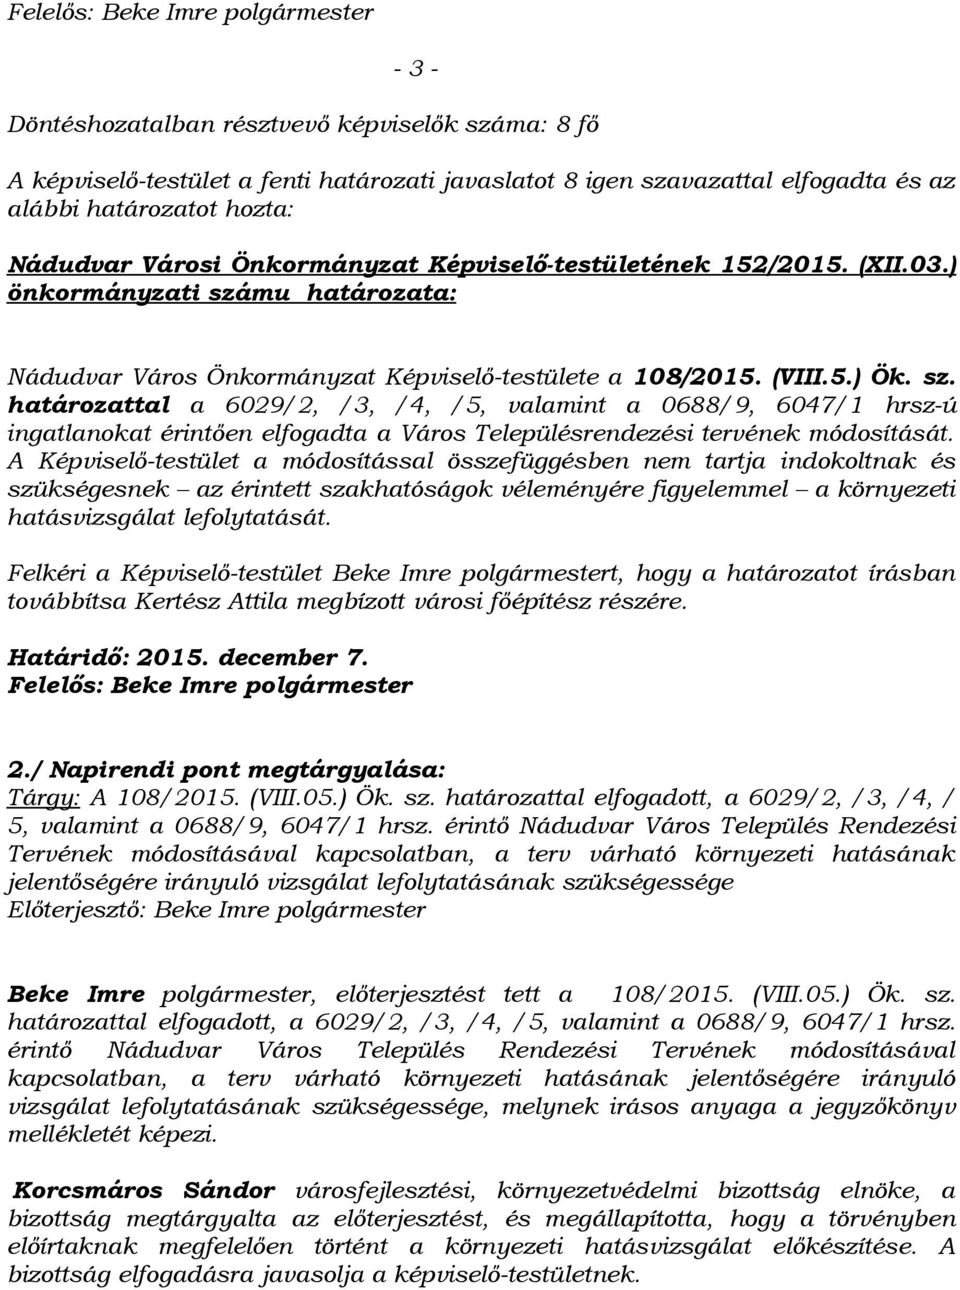 mu határozata: Nádudvar Város Önkormányzat Képviselő-testülete a 108/2015. (VIII.5.) Ök. sz.